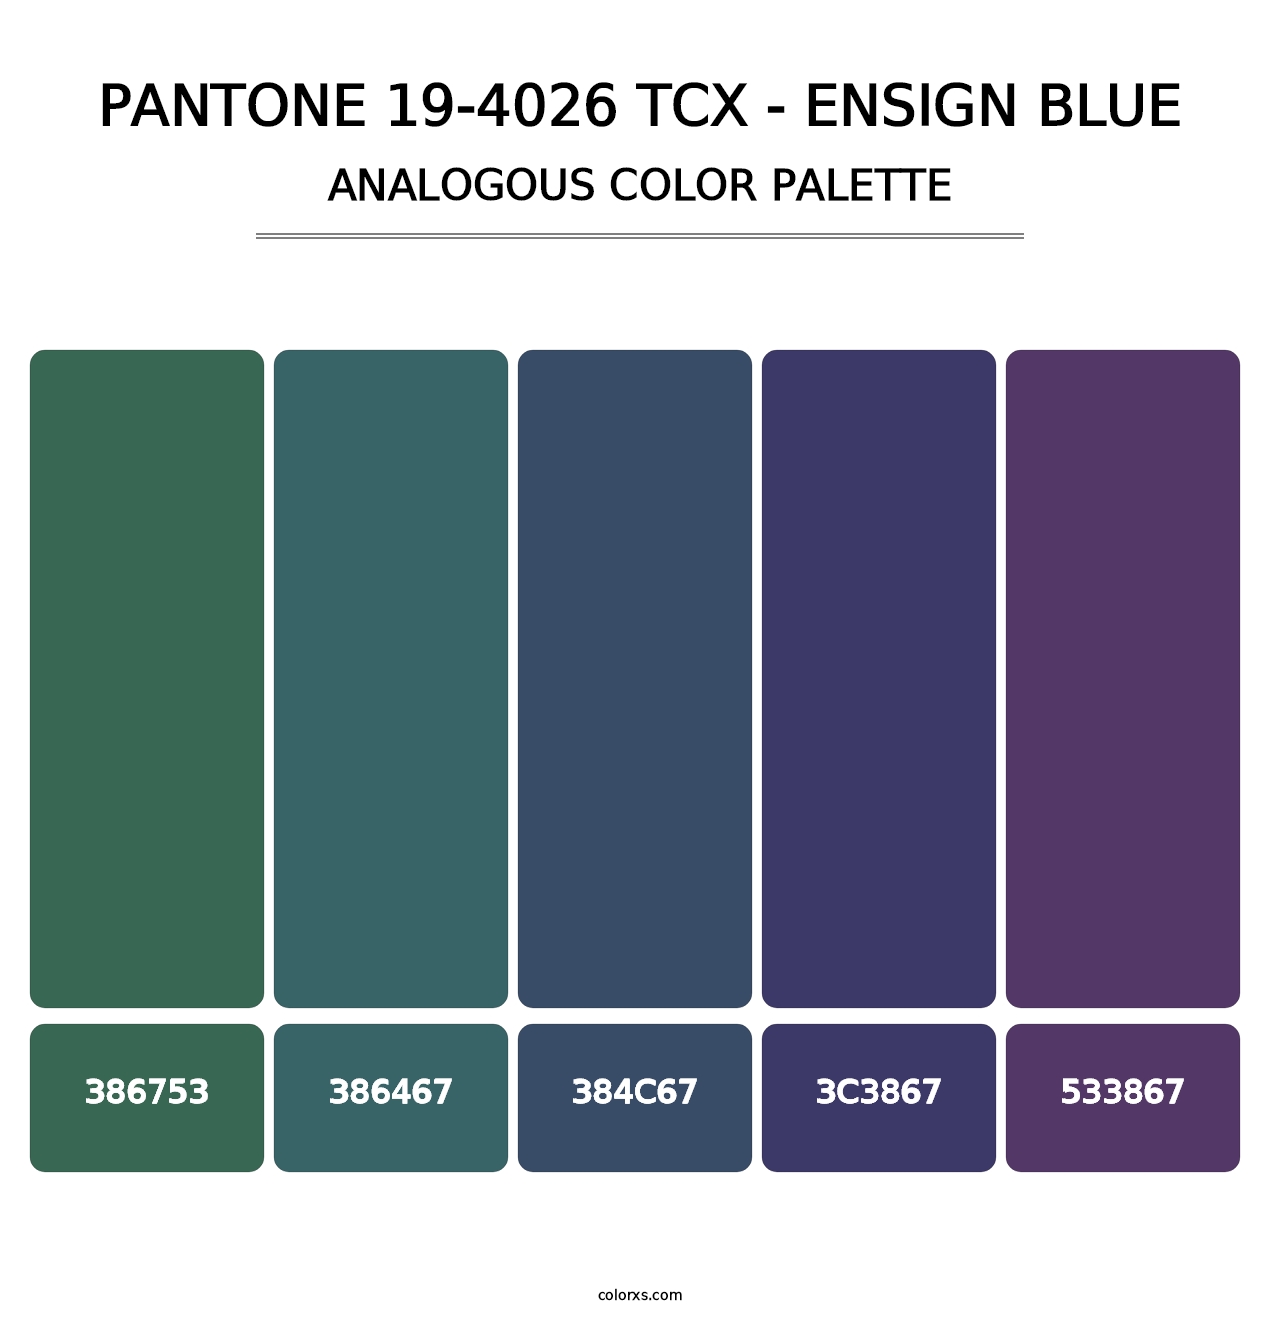 PANTONE 19-4026 TCX - Ensign Blue - Analogous Color Palette